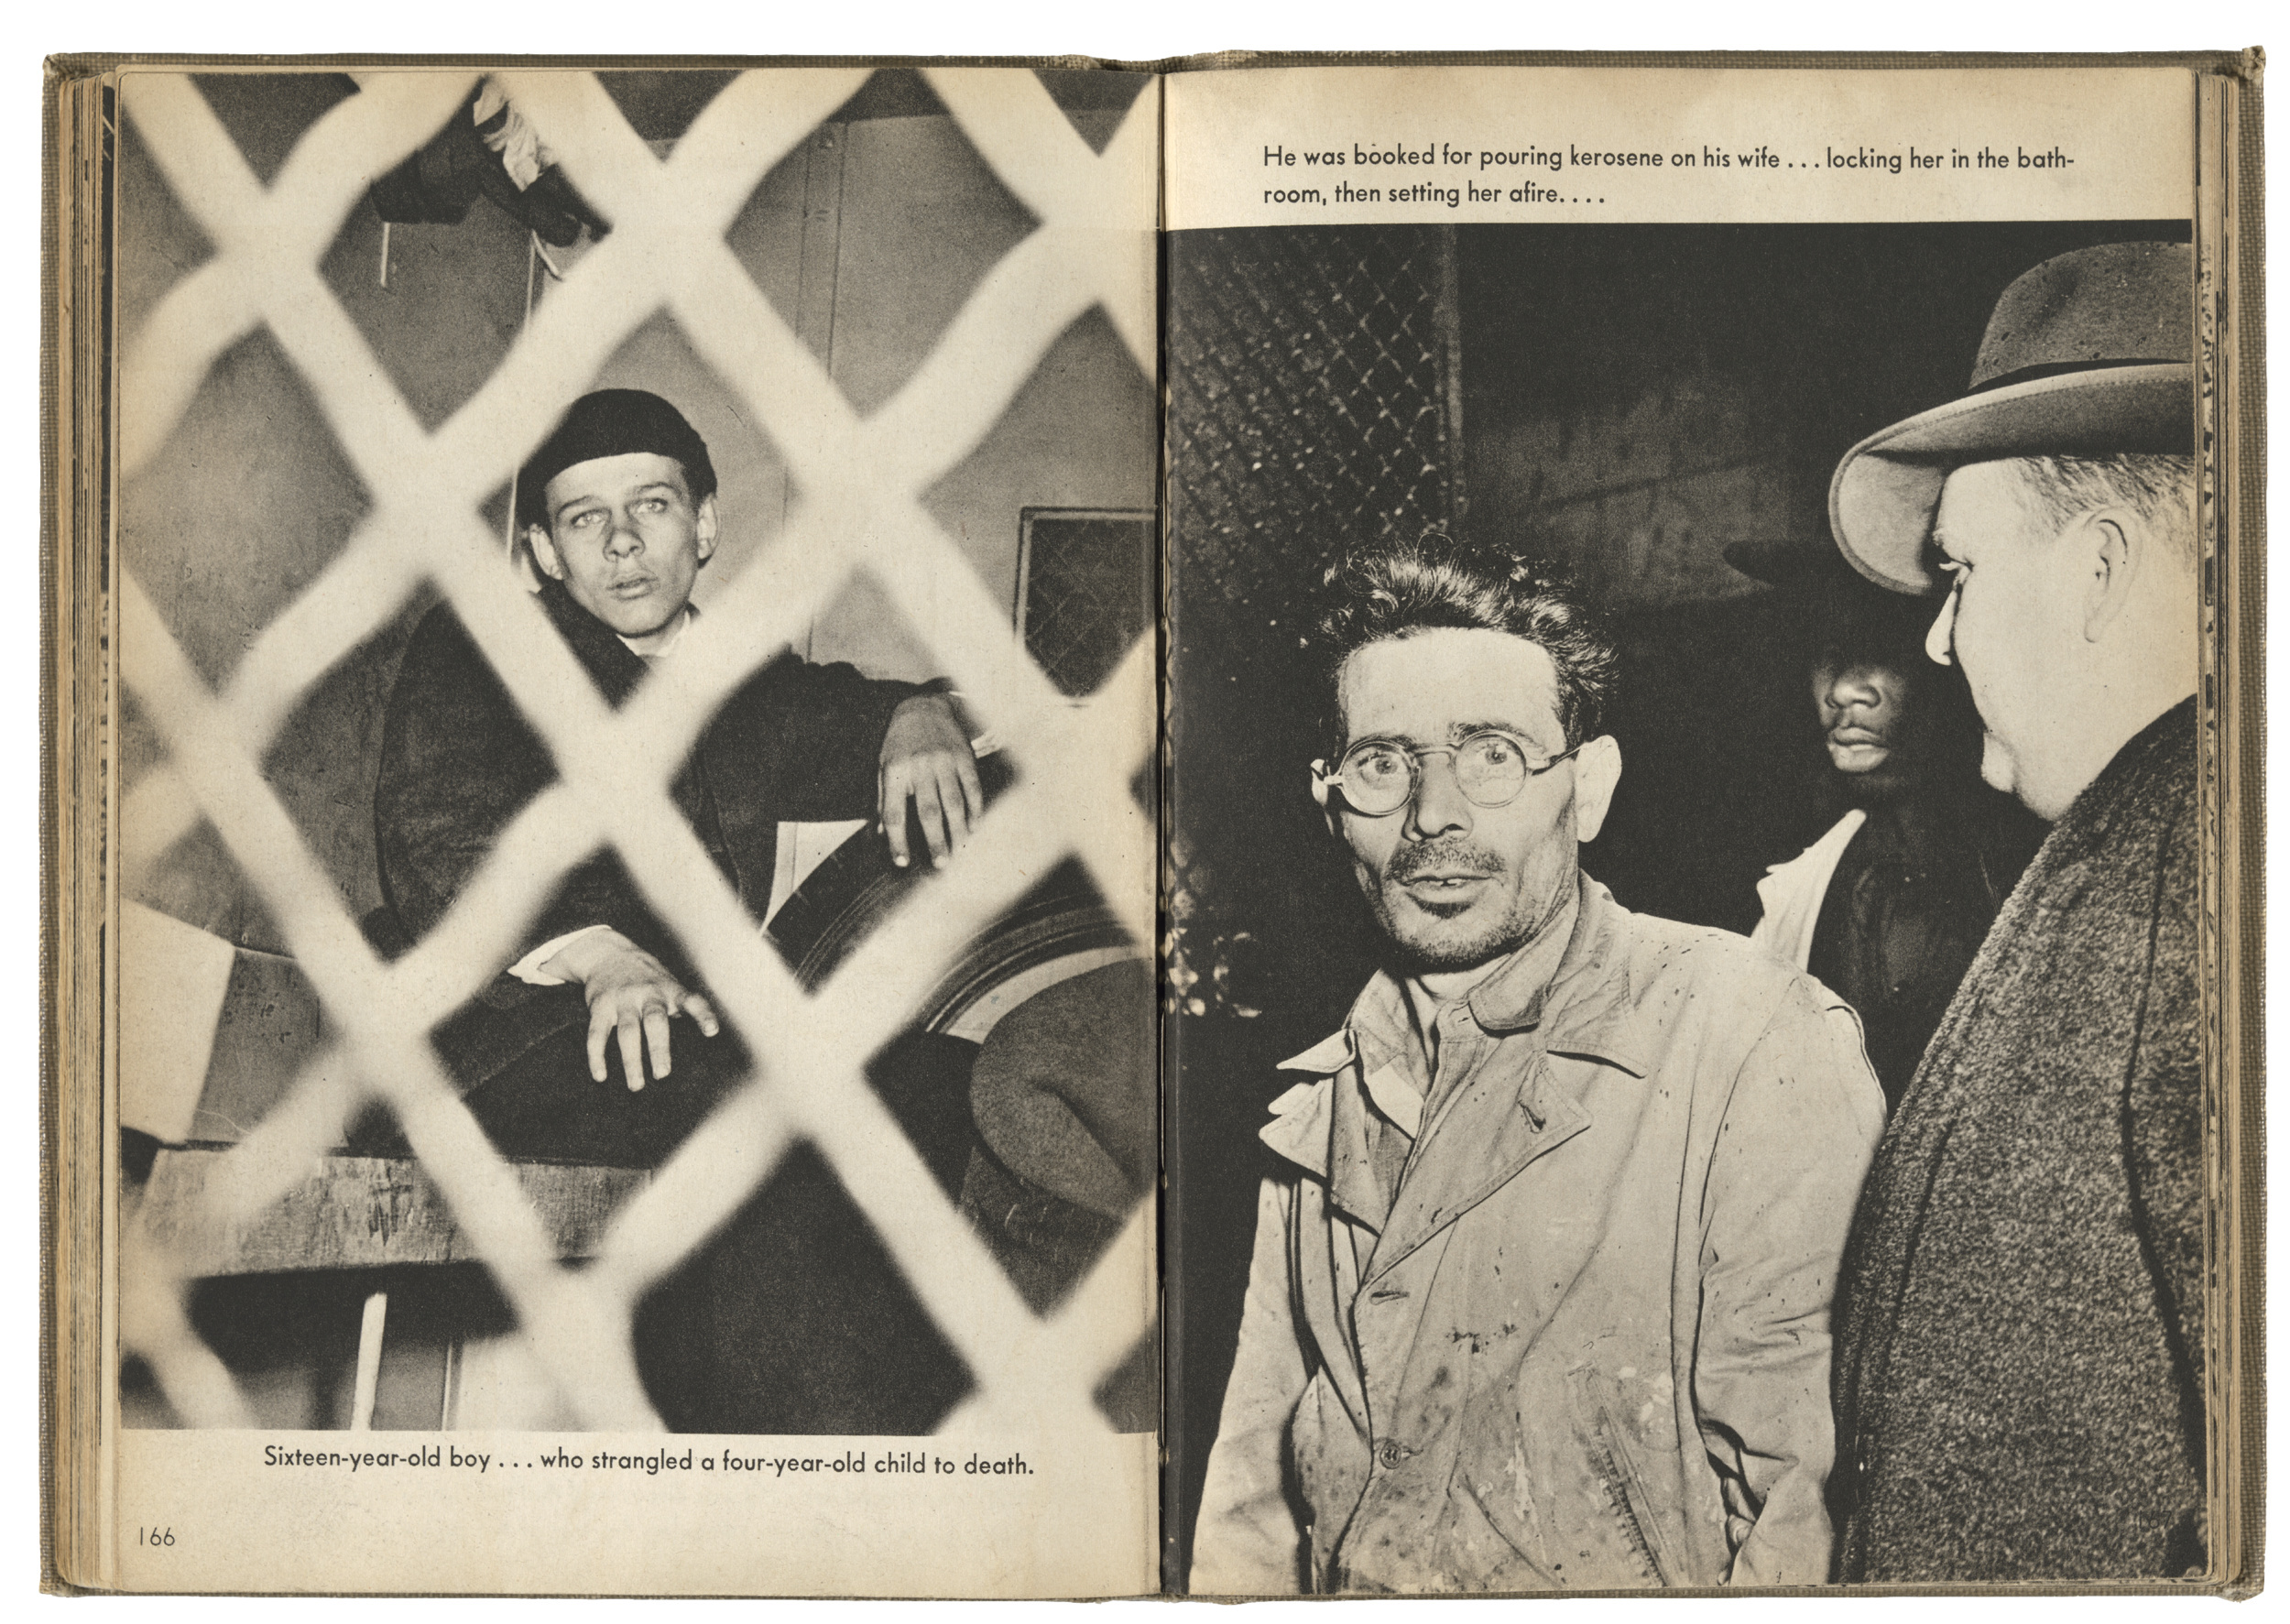 Frank Pape, Arrested for Homicide, November 10, 1944 